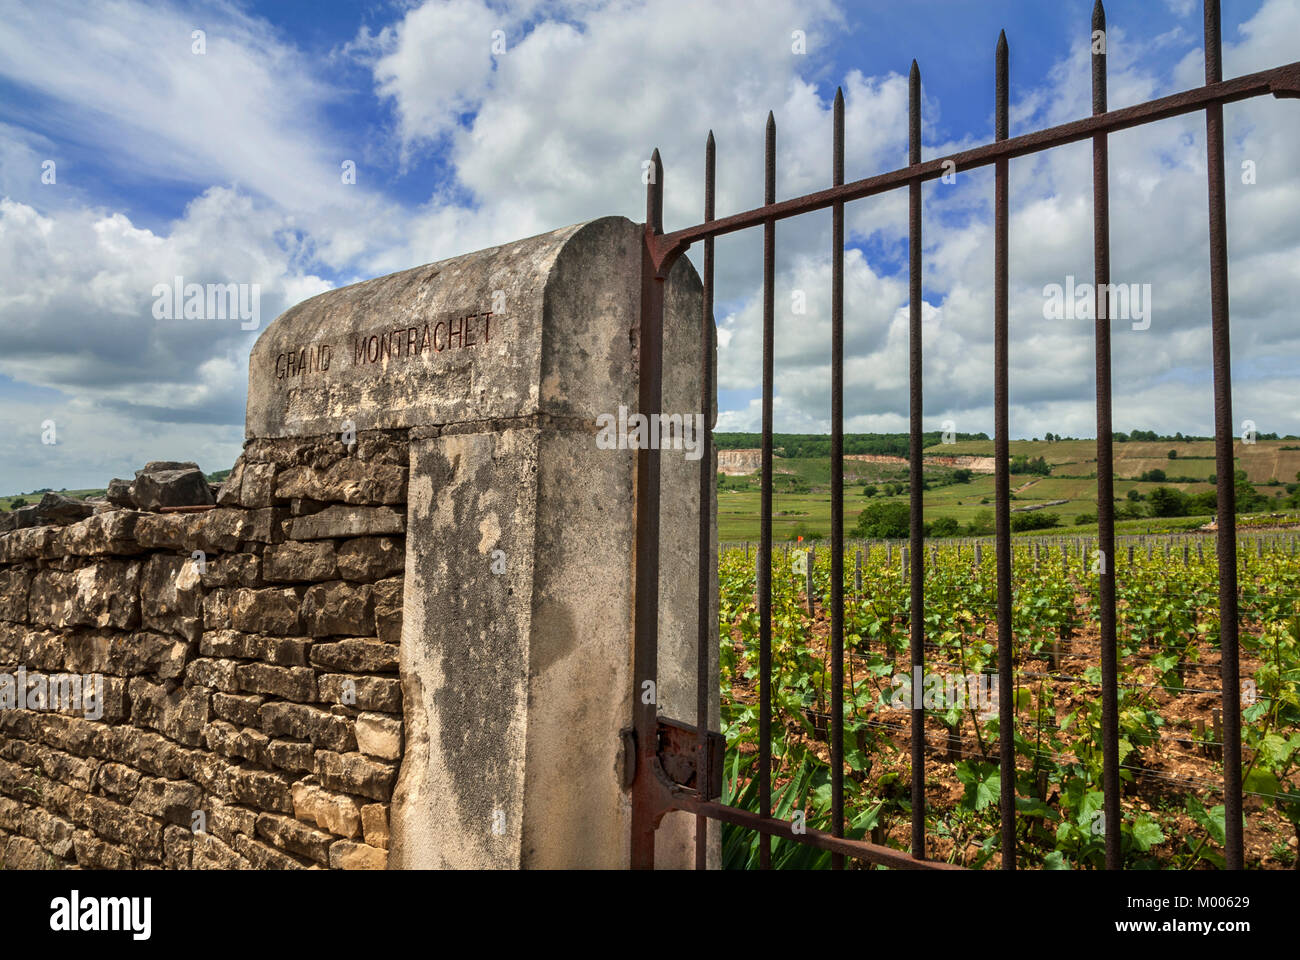 LE MONTRACHET Entrance gate to the fine Grand Montrachet vineyard, Puligny-Montrachet, Côte d'Or, France. [Côte de Beaune Grand Cru] Stock Photo